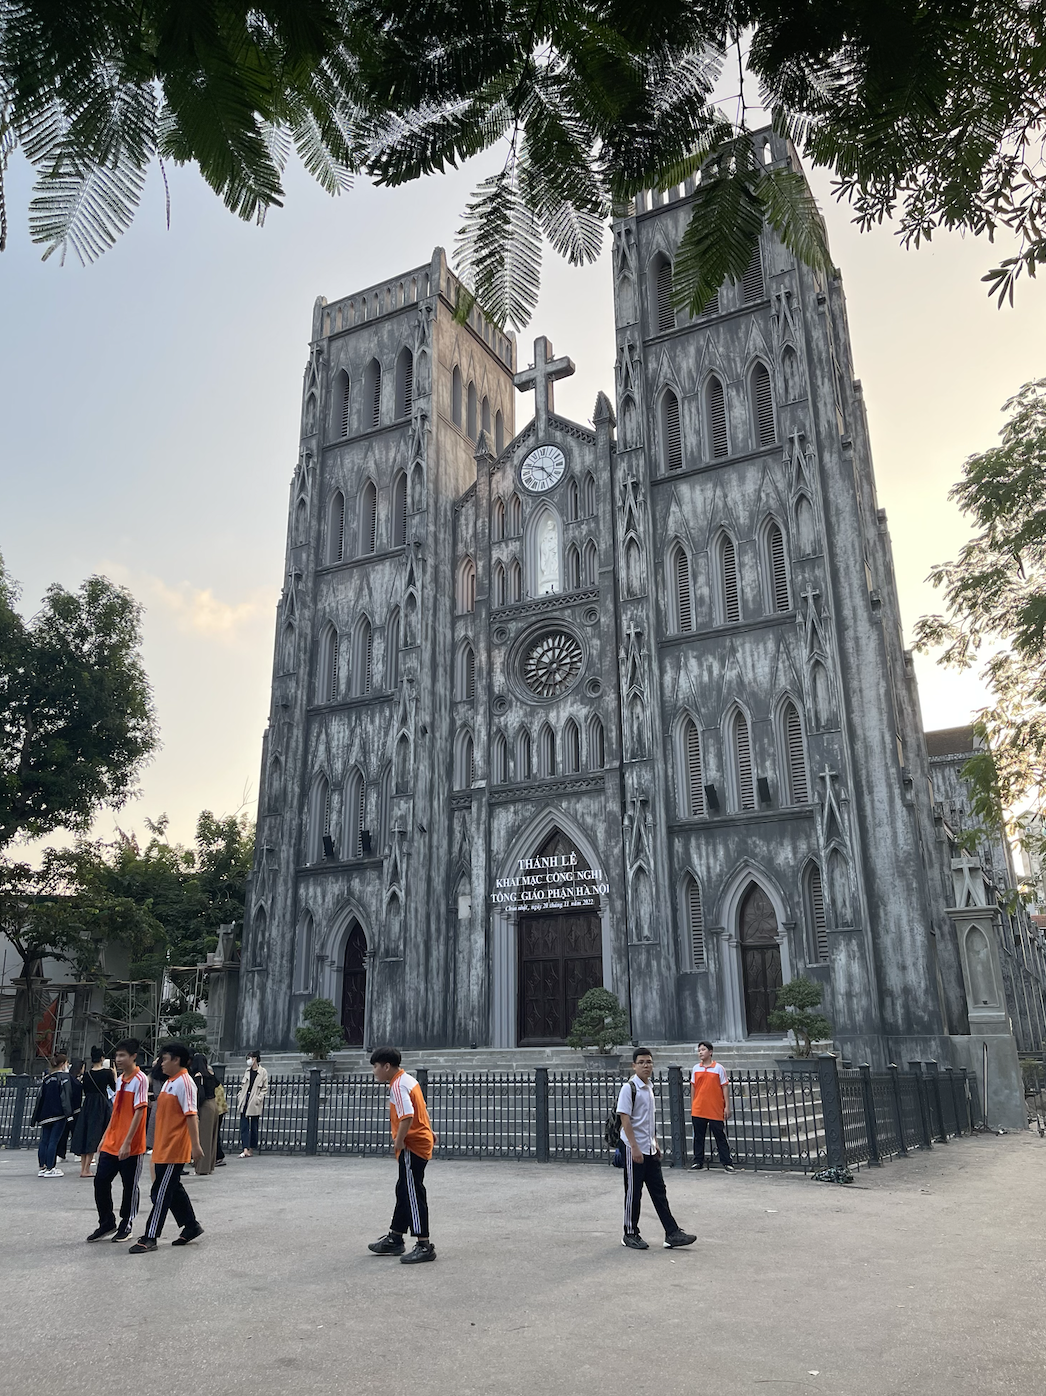 St. Joseph's Cathedral, Hanoi, Vietnam-10-day Vietnam itinerary